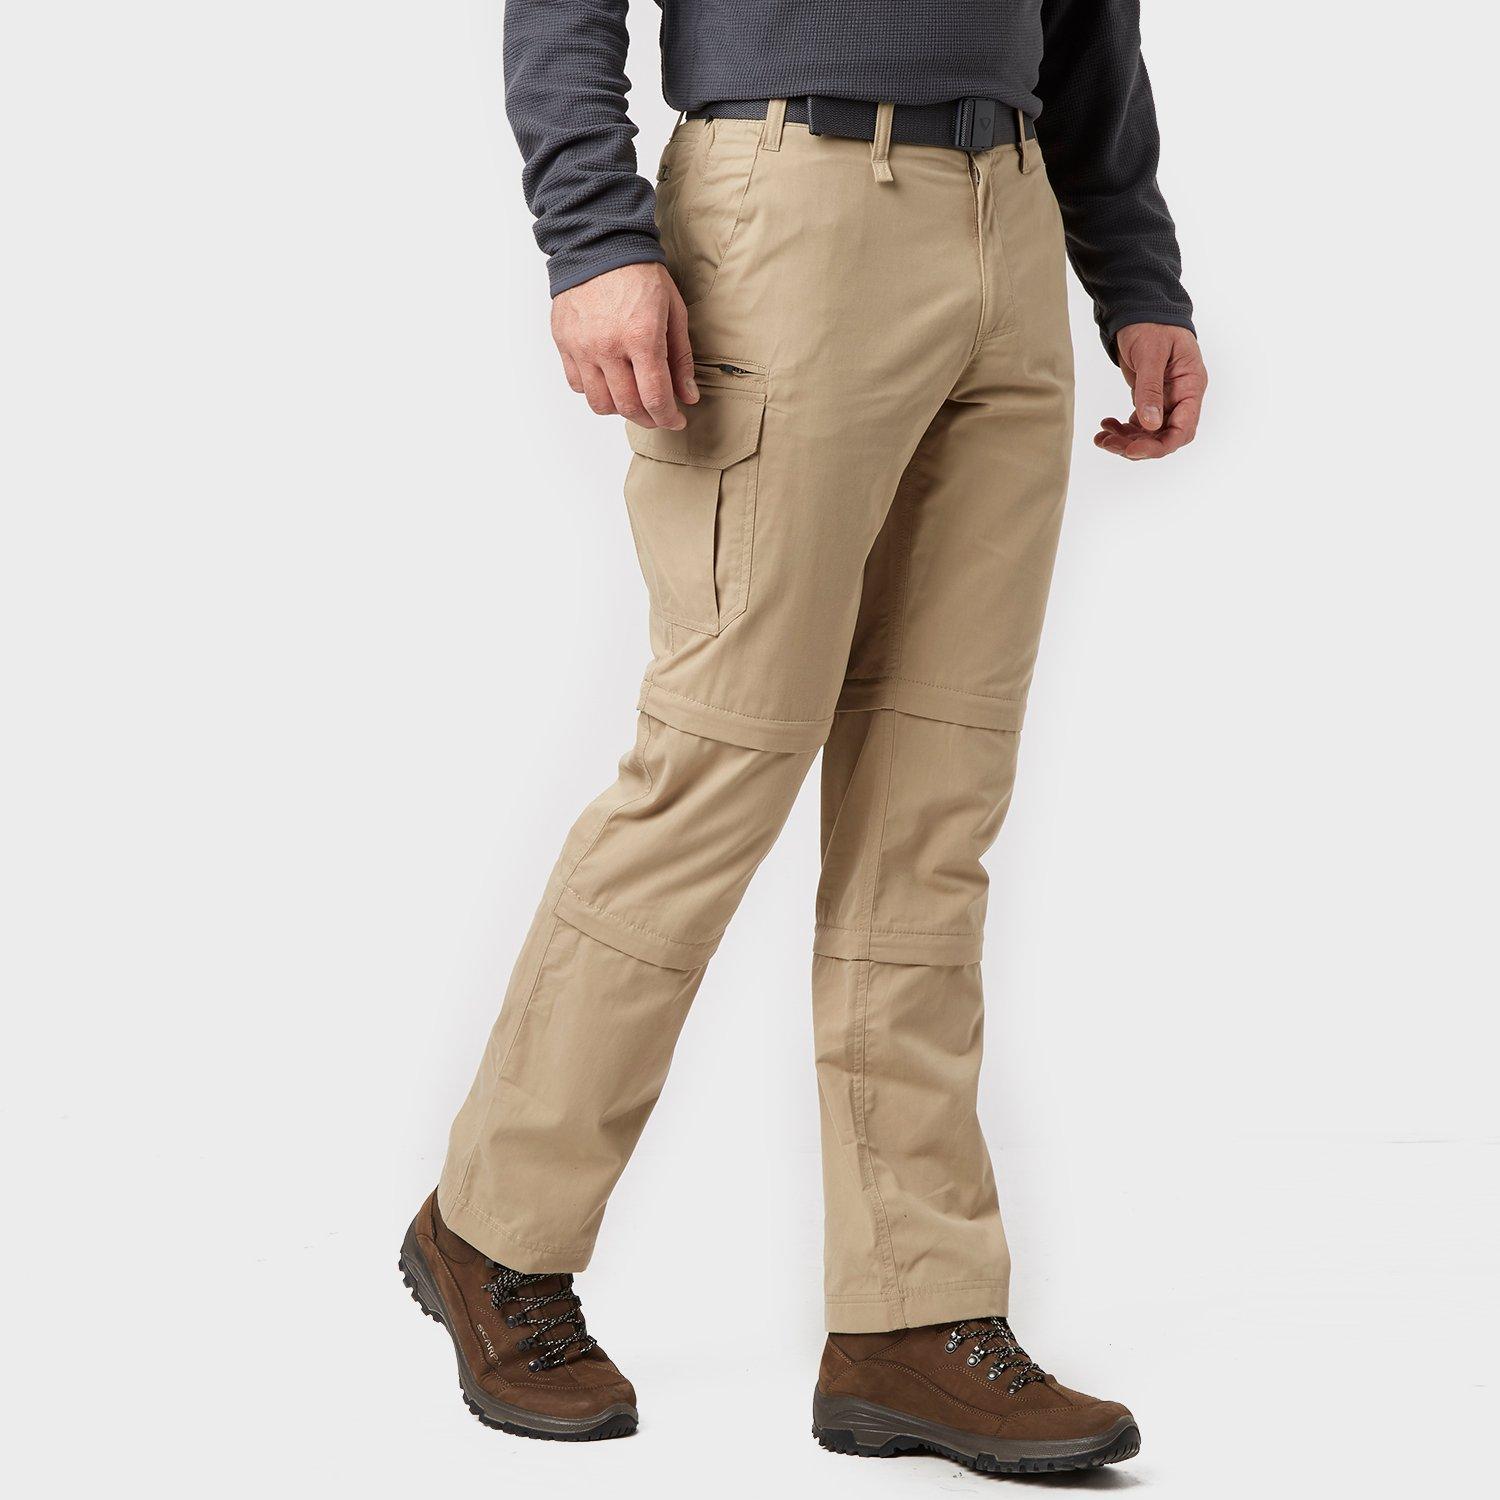 Brasher Mens Double Zip-off Trousers - Beige/stn  Beige/stn